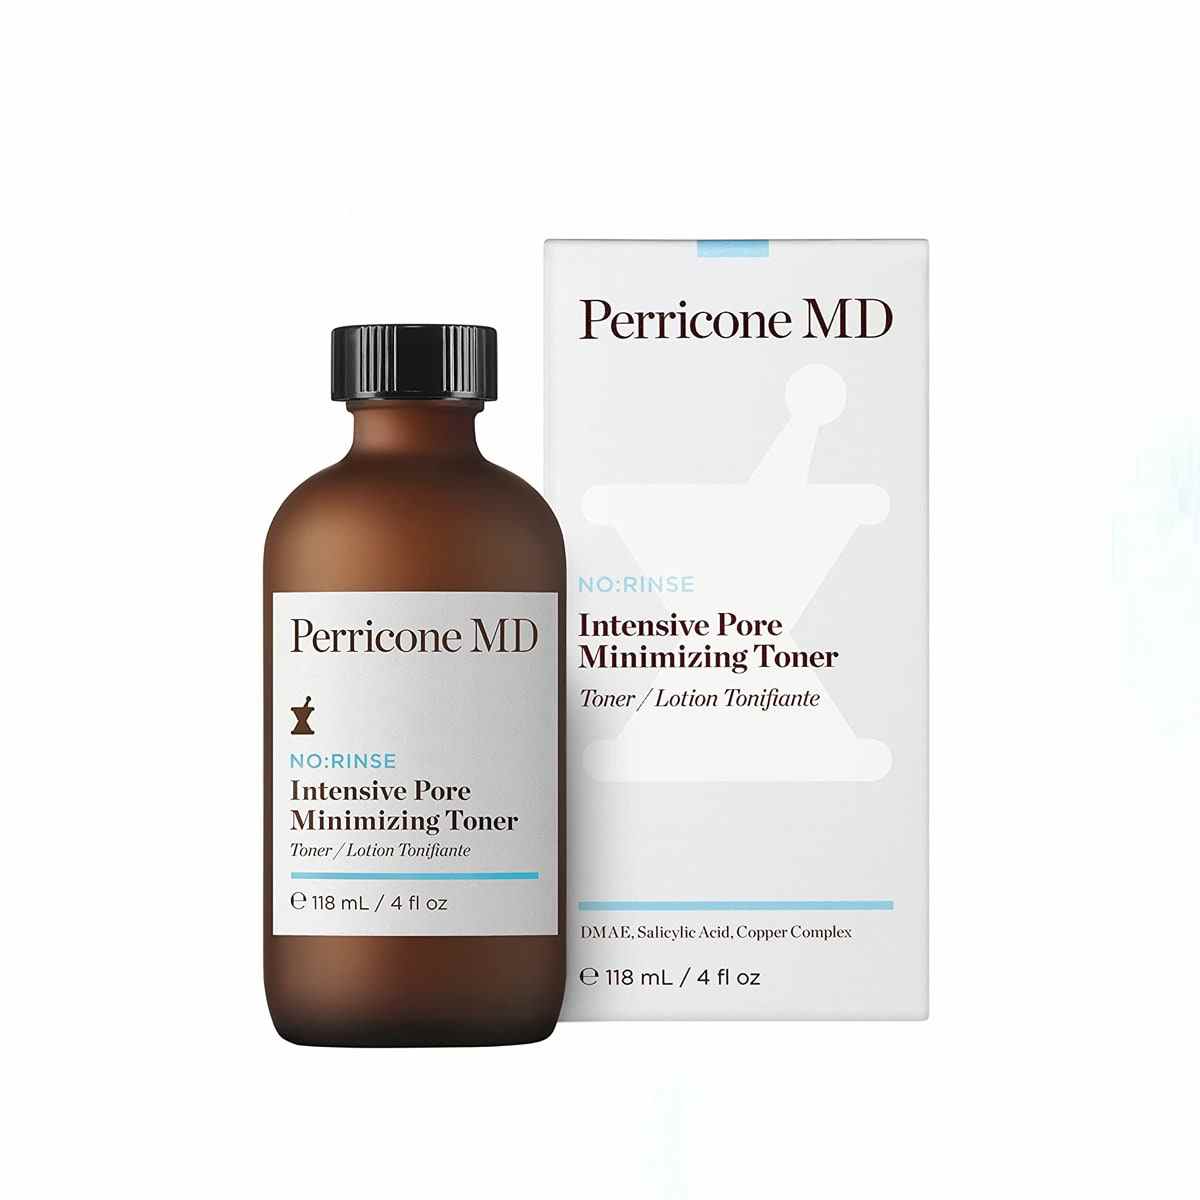 Brown Perricone MD No: Rinse Intensive Pore Minimizing Toner Flasche und weiße Verpackung auf weißem Hintergrund